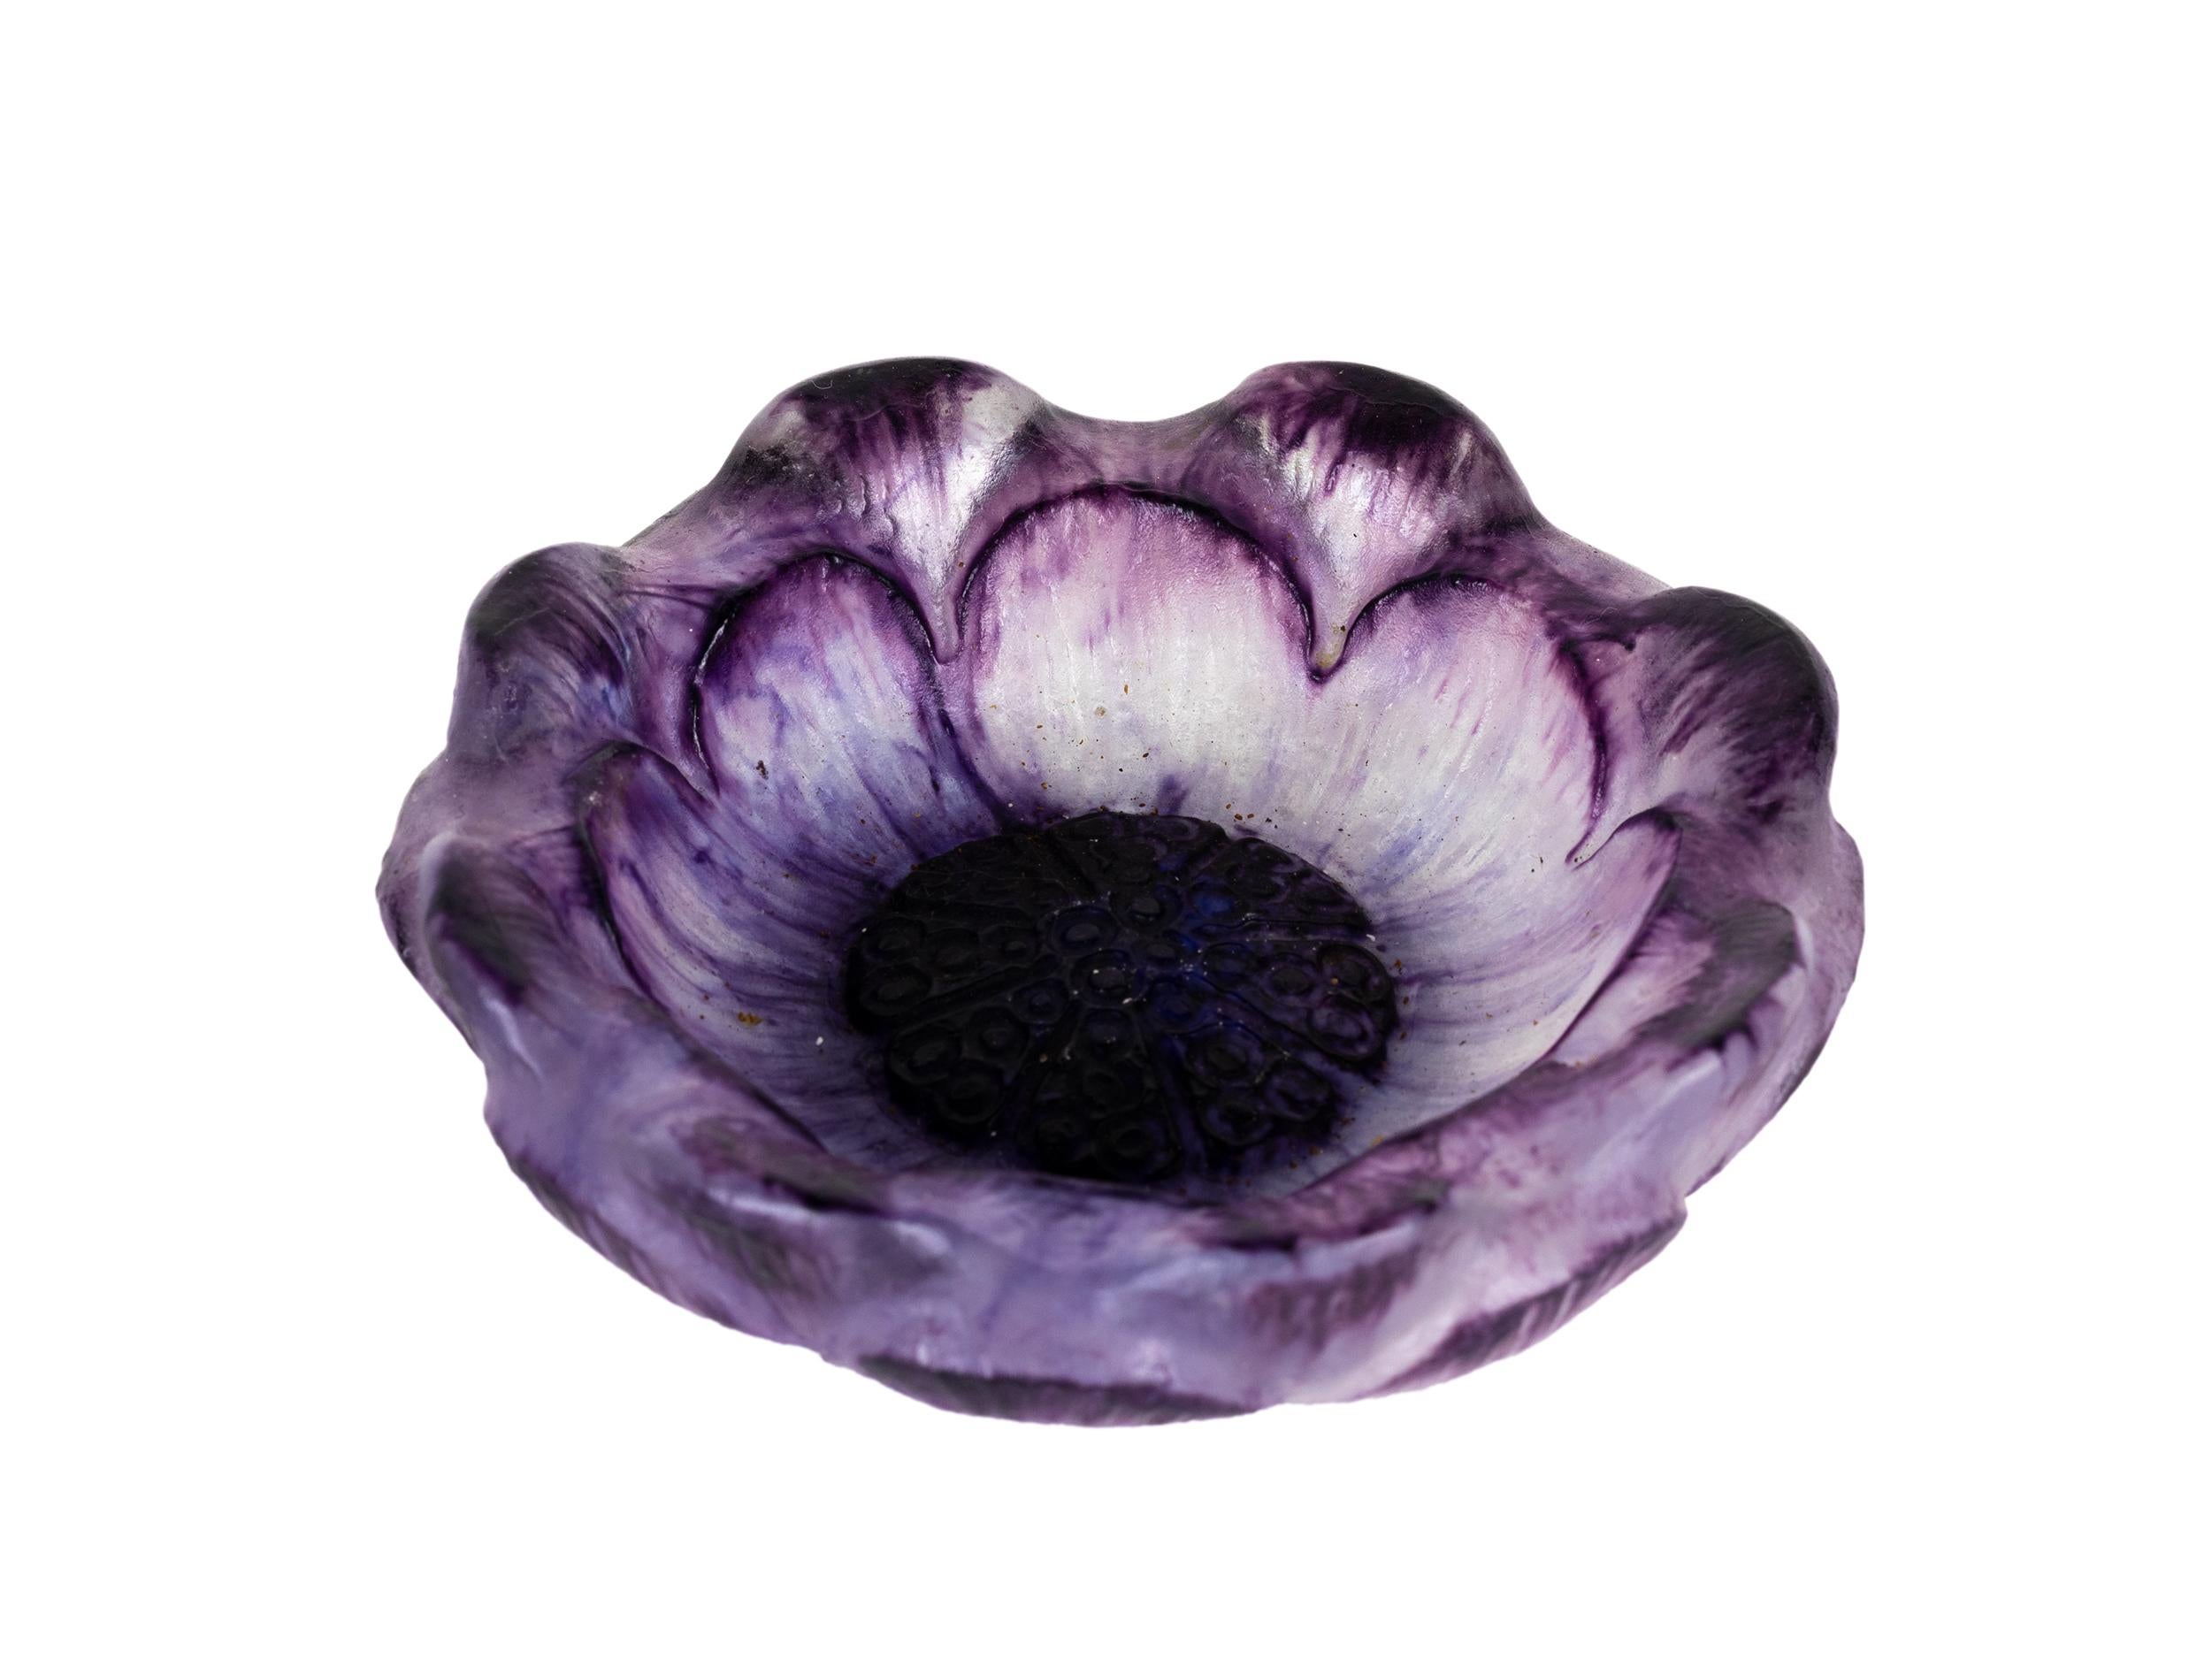 Pate-de-verre 'Open Flower' vase/ bol en verre violet. 
Vers 1924.
Modèle et fonte d'une tête de fleur ouverte, sur un pied court (restauré) avec 